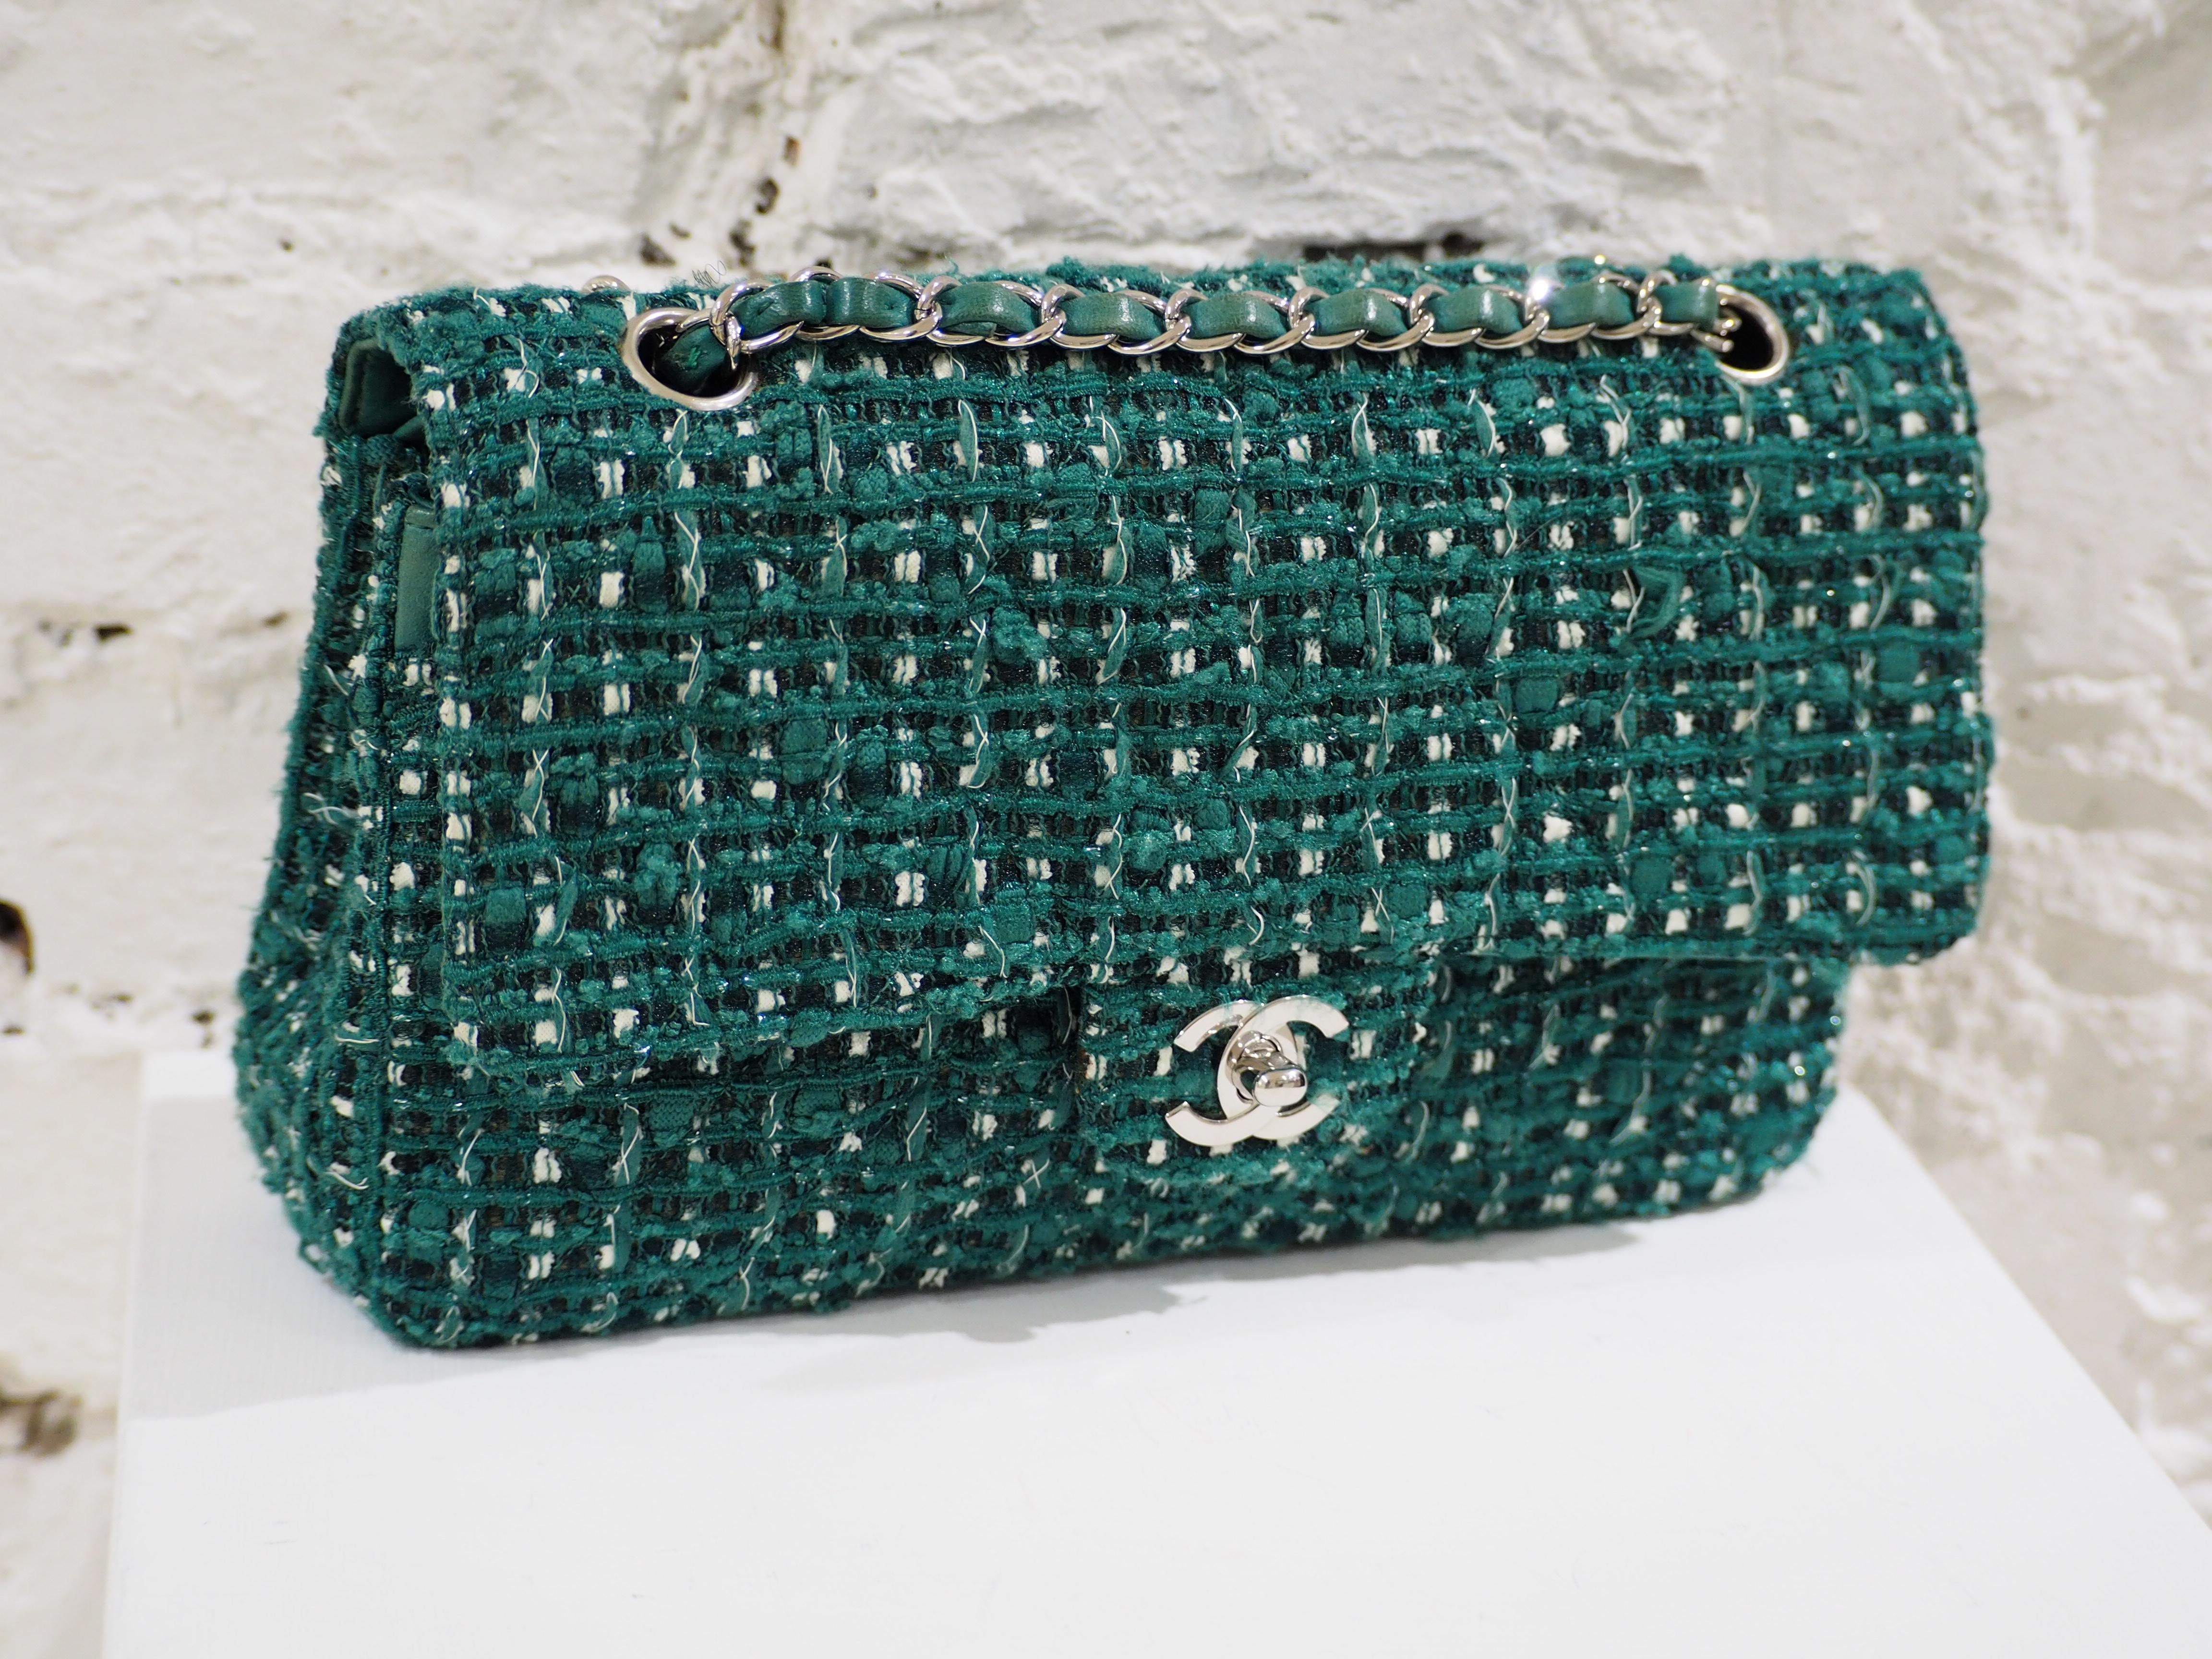 Chanel 2.55 green tweed shoulder bag 2